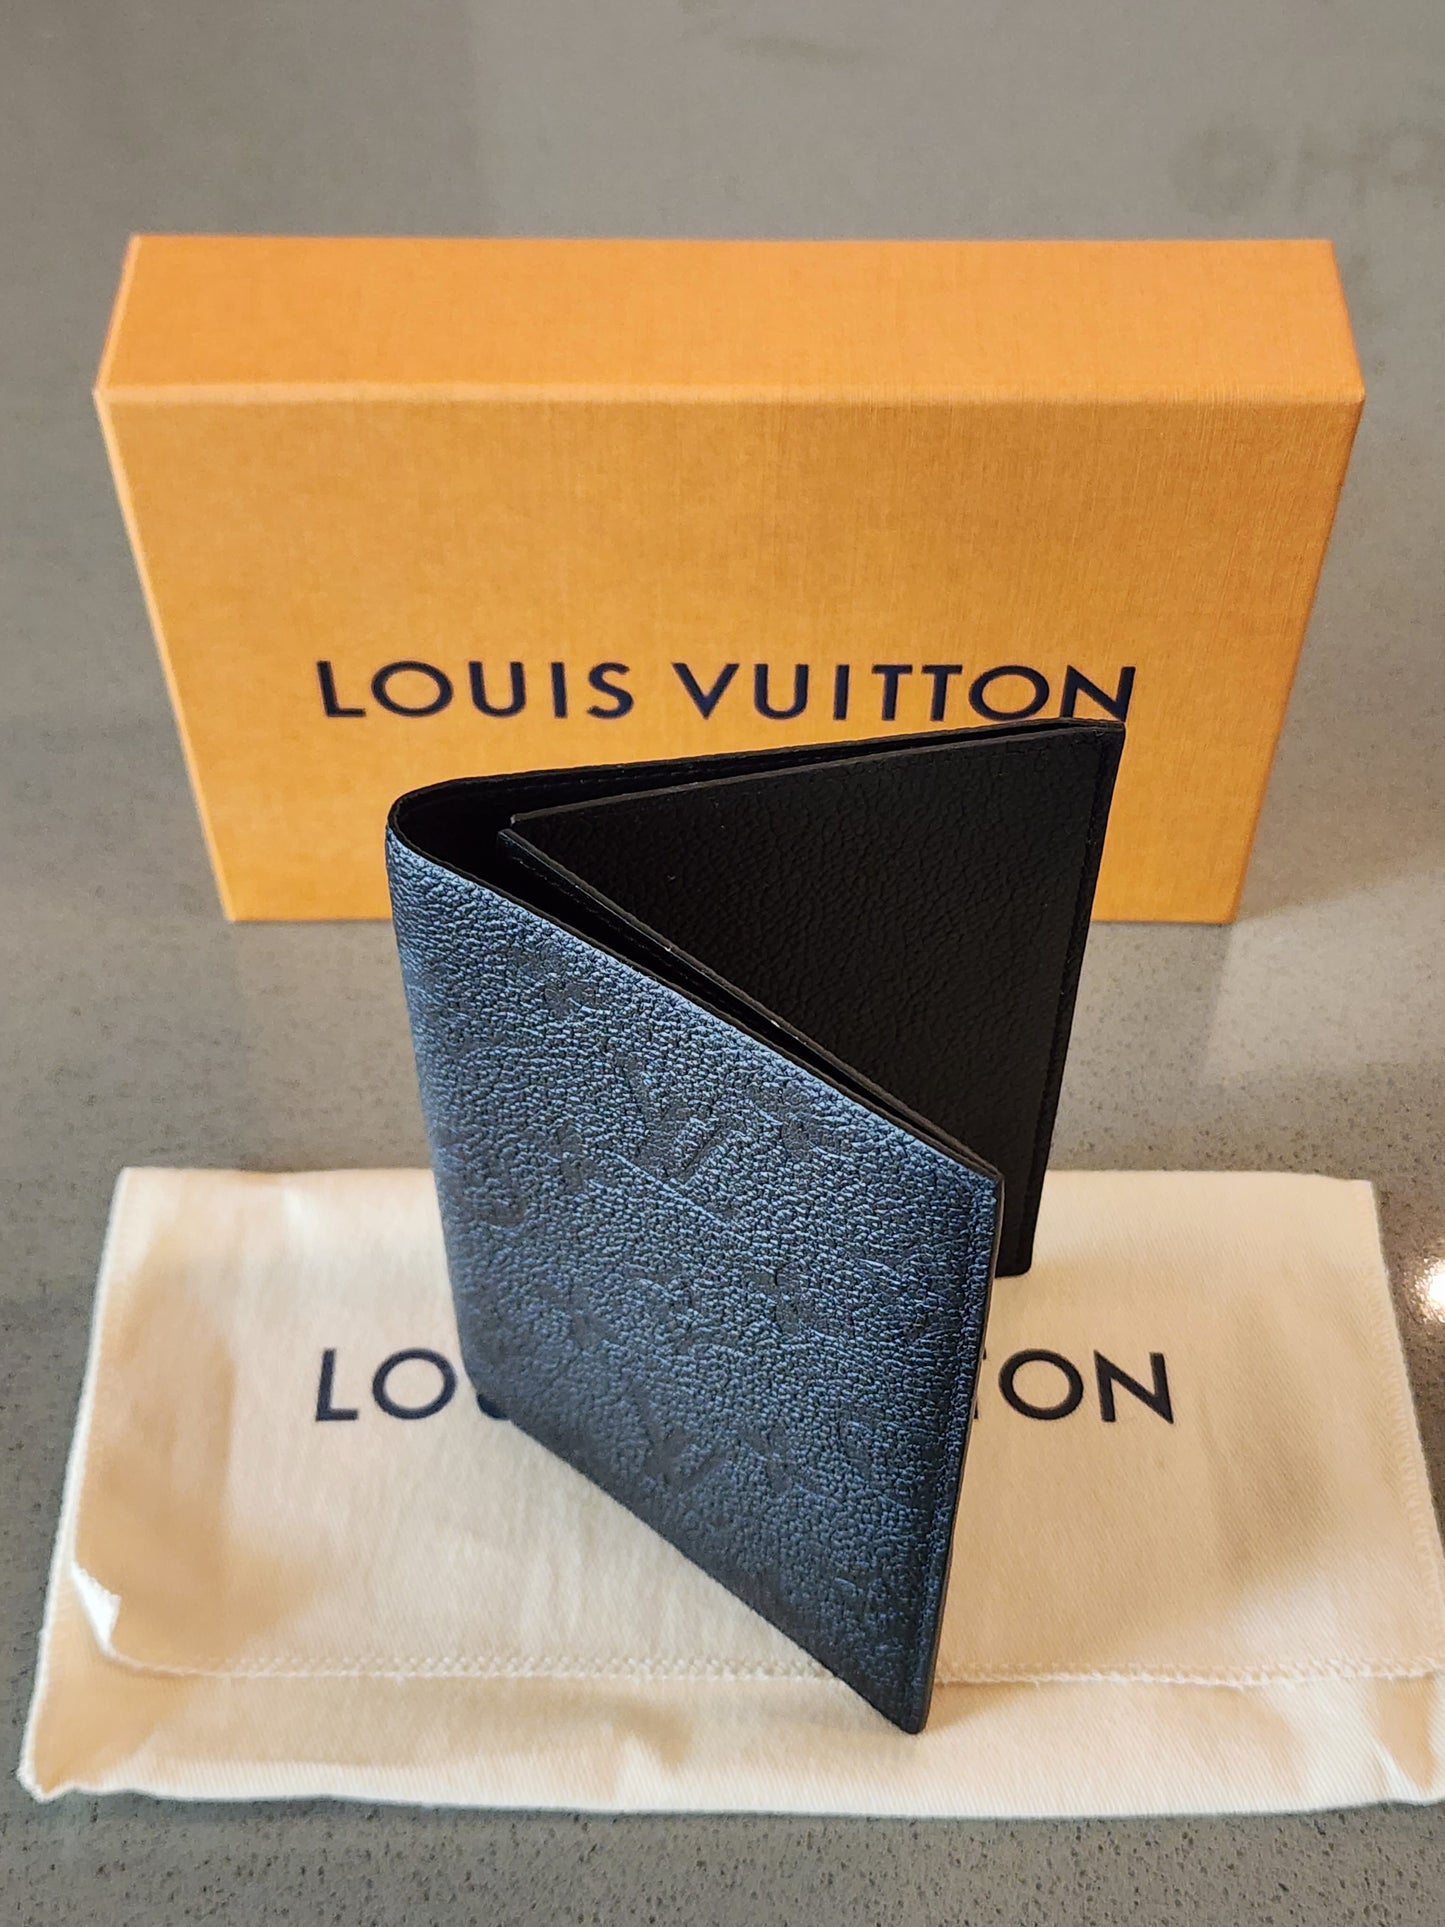 Louis Vuitton Black Monogram Empreinte Passport Cover, myGemma, QA